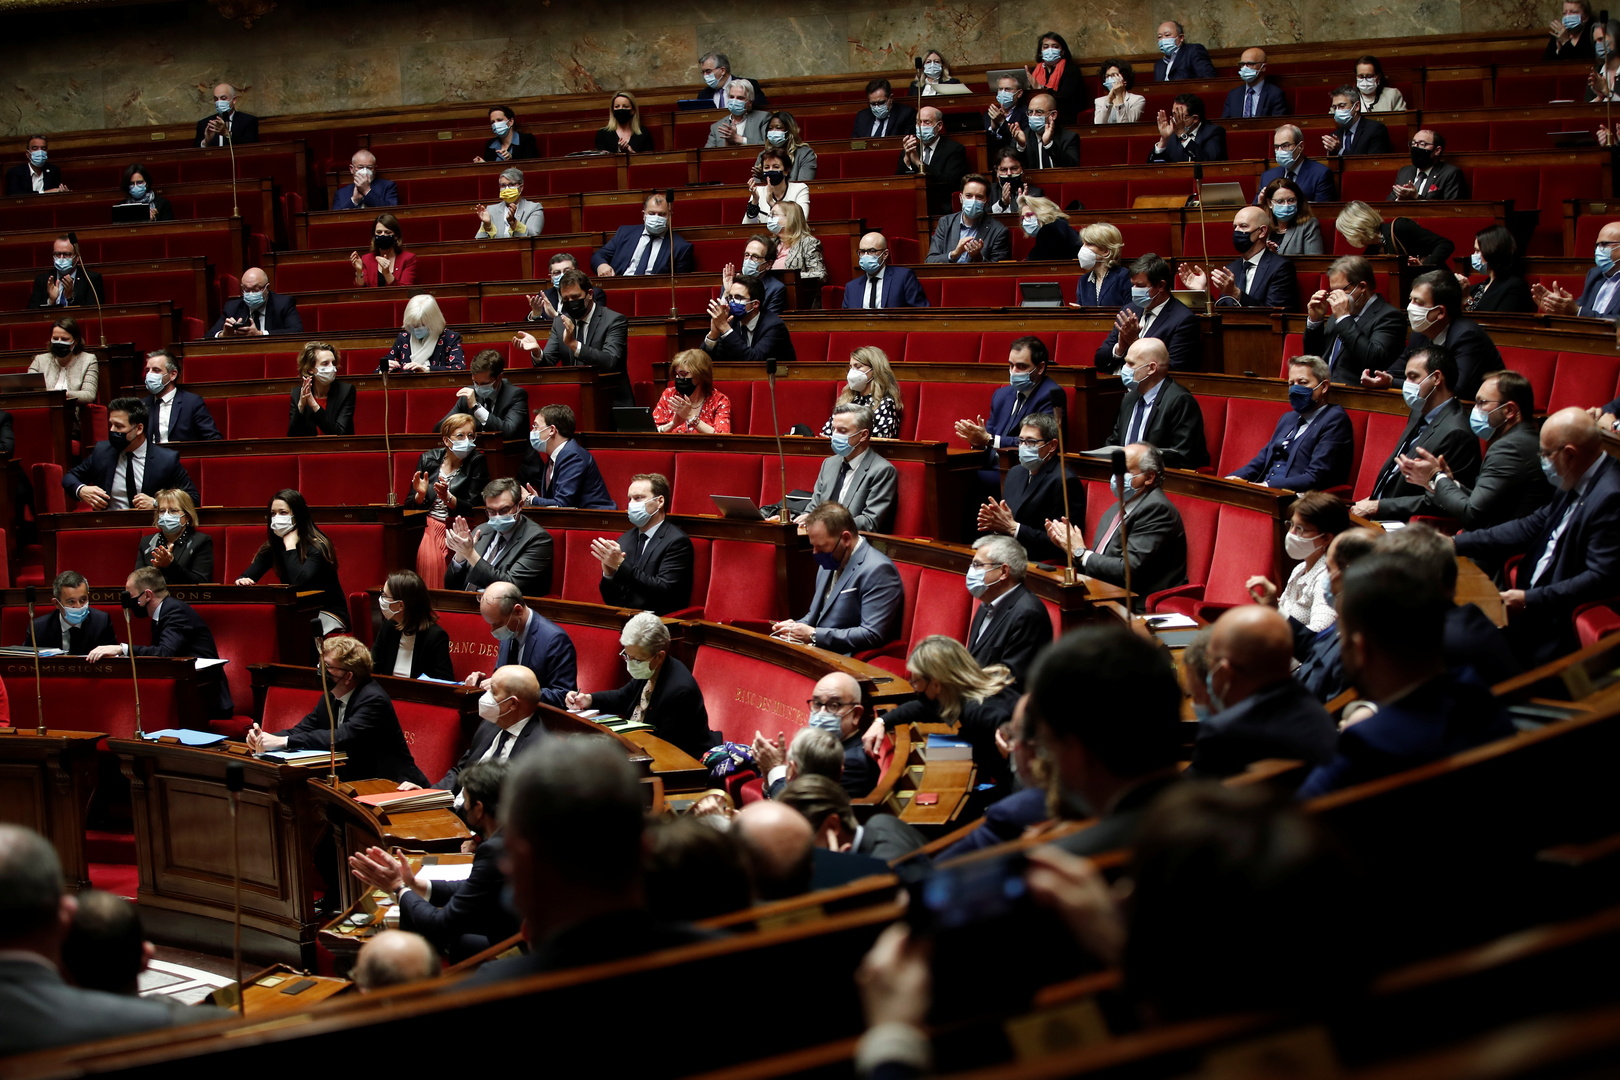 مجلس النواب الفرنسي يوافق على مشروع قانون بشأن تغير المناخ لجعل الاقتصاد صديقا للبيئة